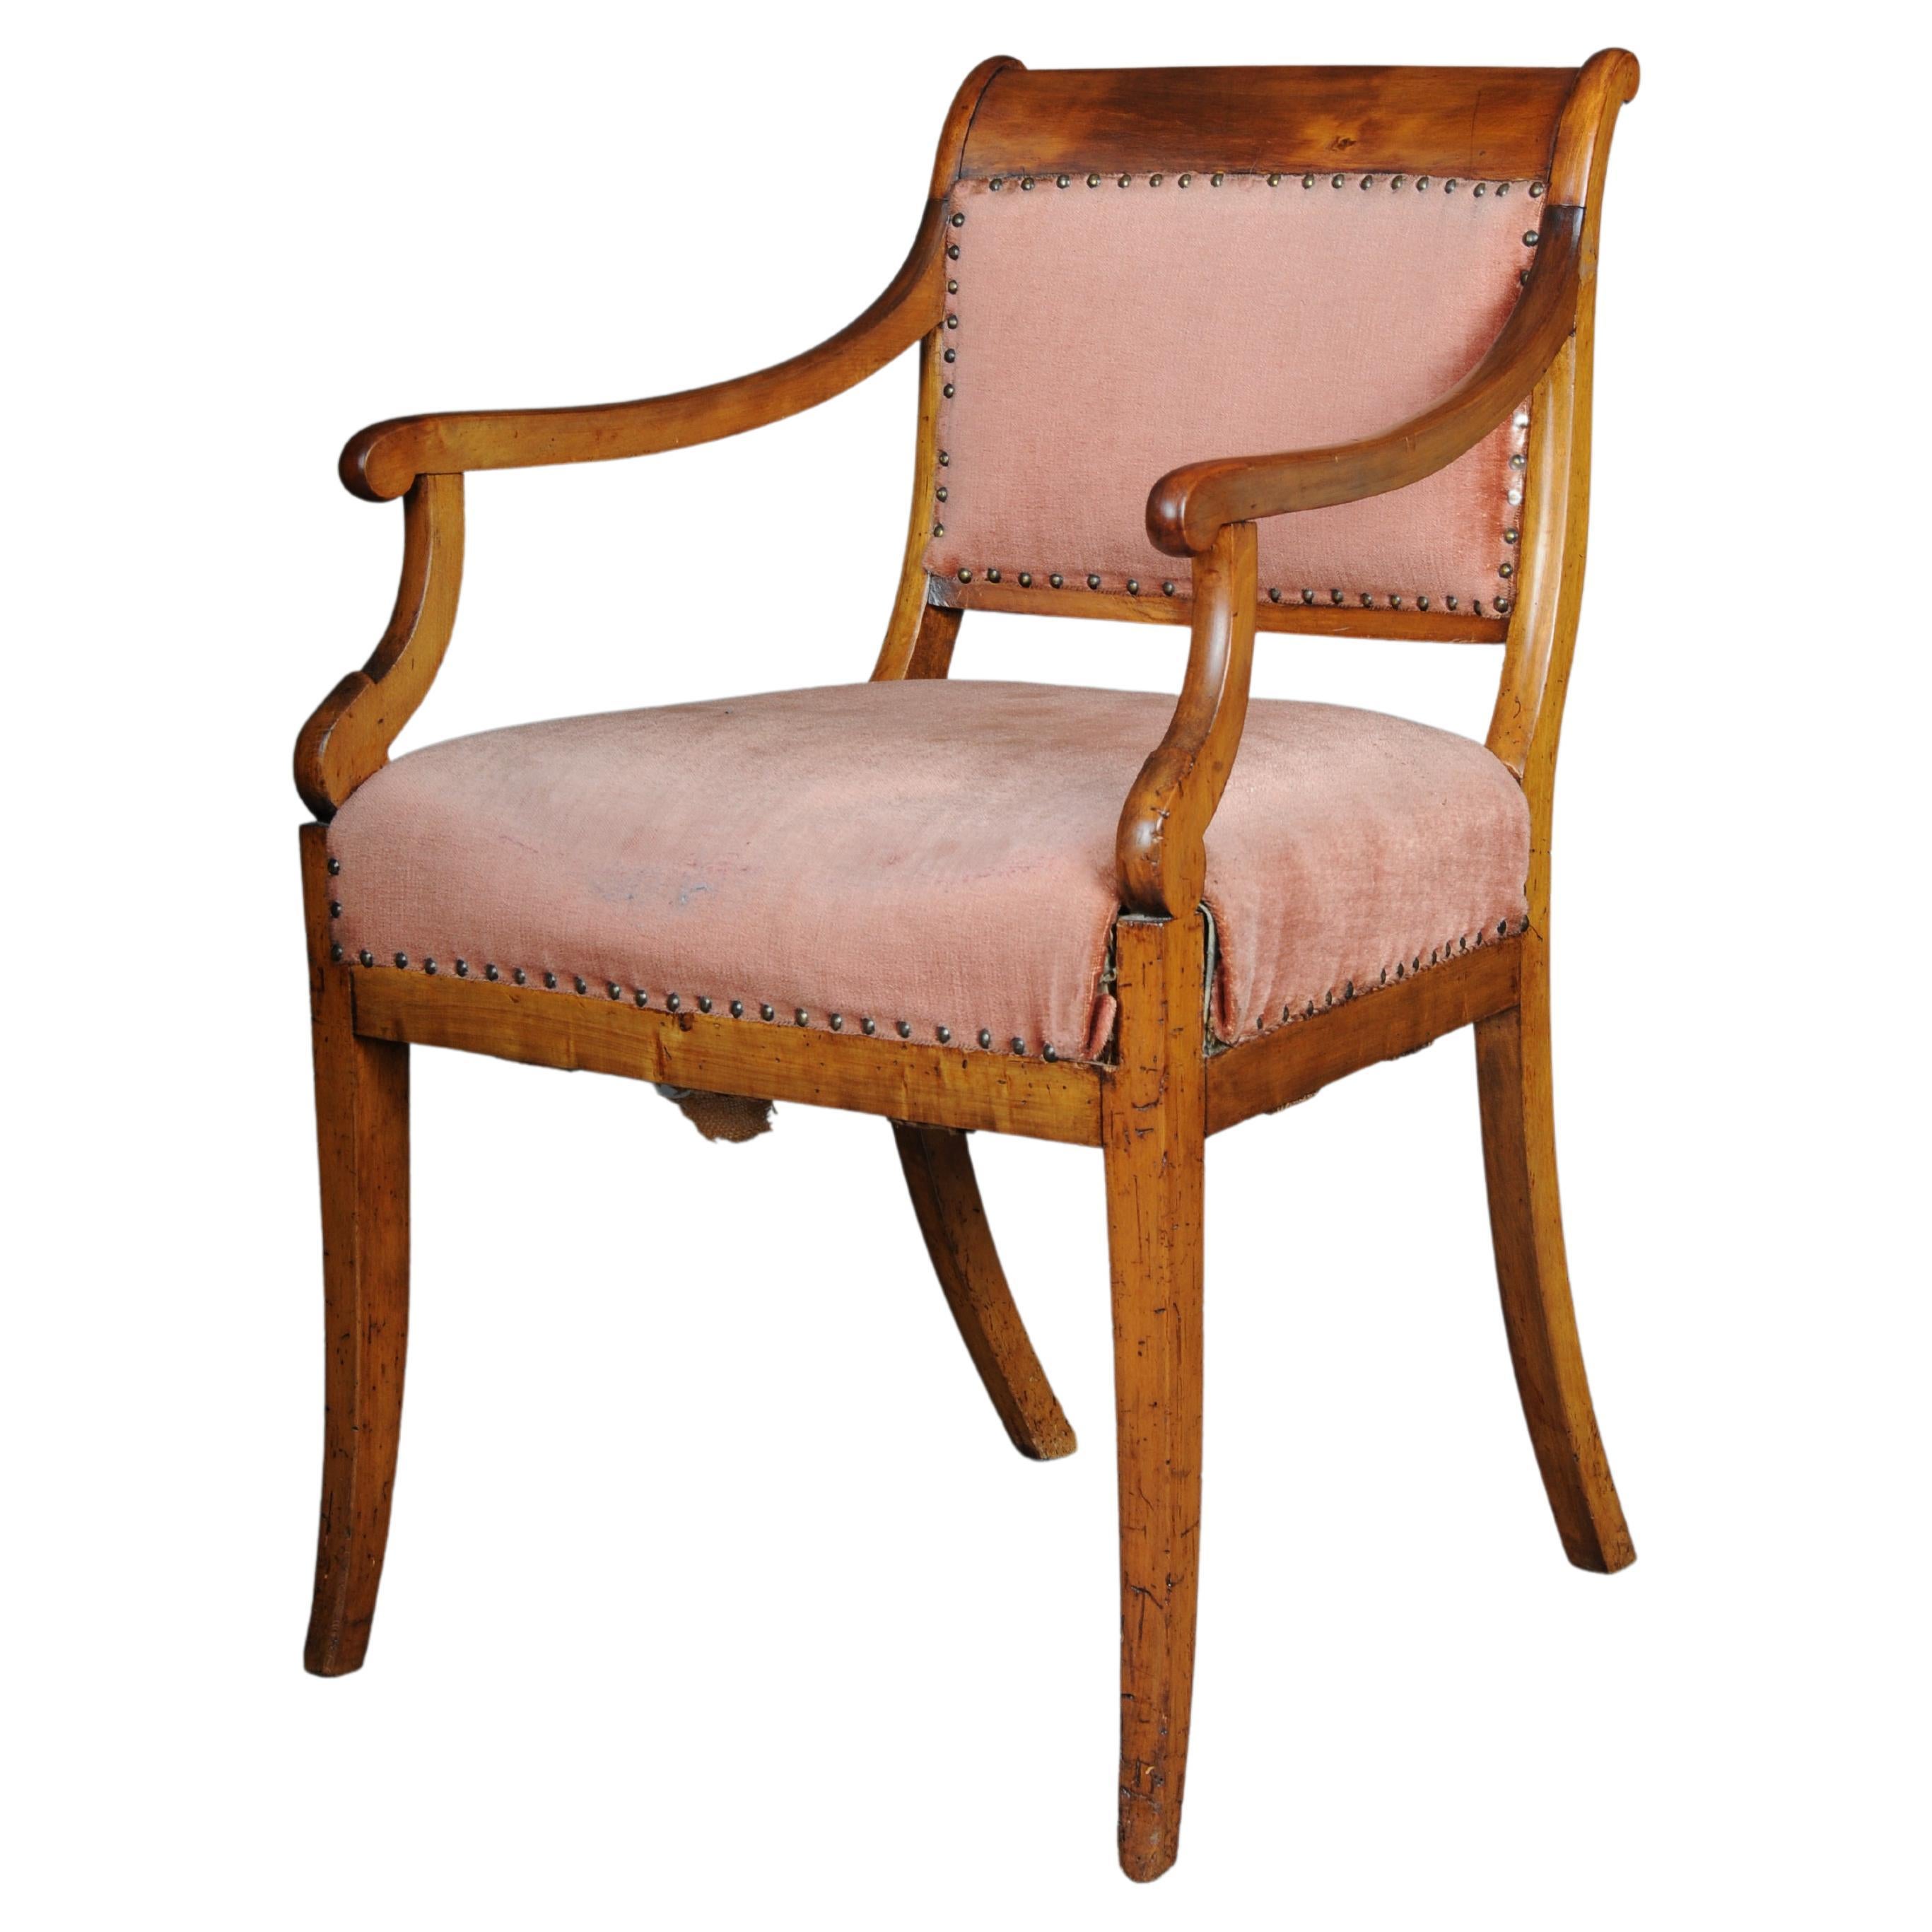 Antique Biedermeier armchair from around 1840, birch For Sale